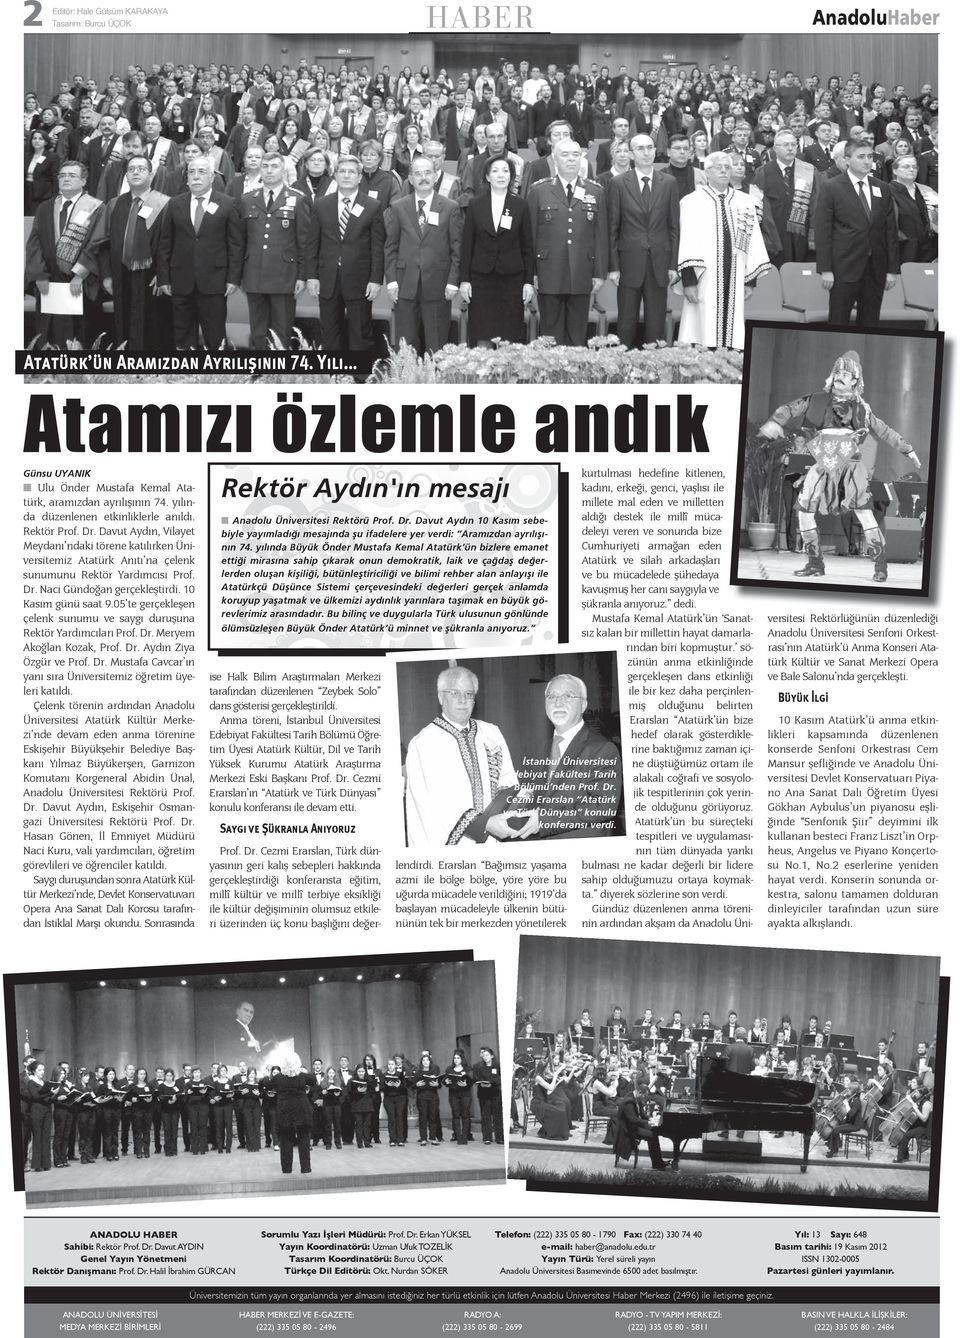 Davut Aydın, Vilayet Meydanı ndaki törene katılırken Üniversitemiz Atatürk Anıtı na çelenk sunumunu Rektör Yardımcısı Prof. Dr. Naci Gündoğan gerçekleştirdi. 10 Kasım günü saat 9.